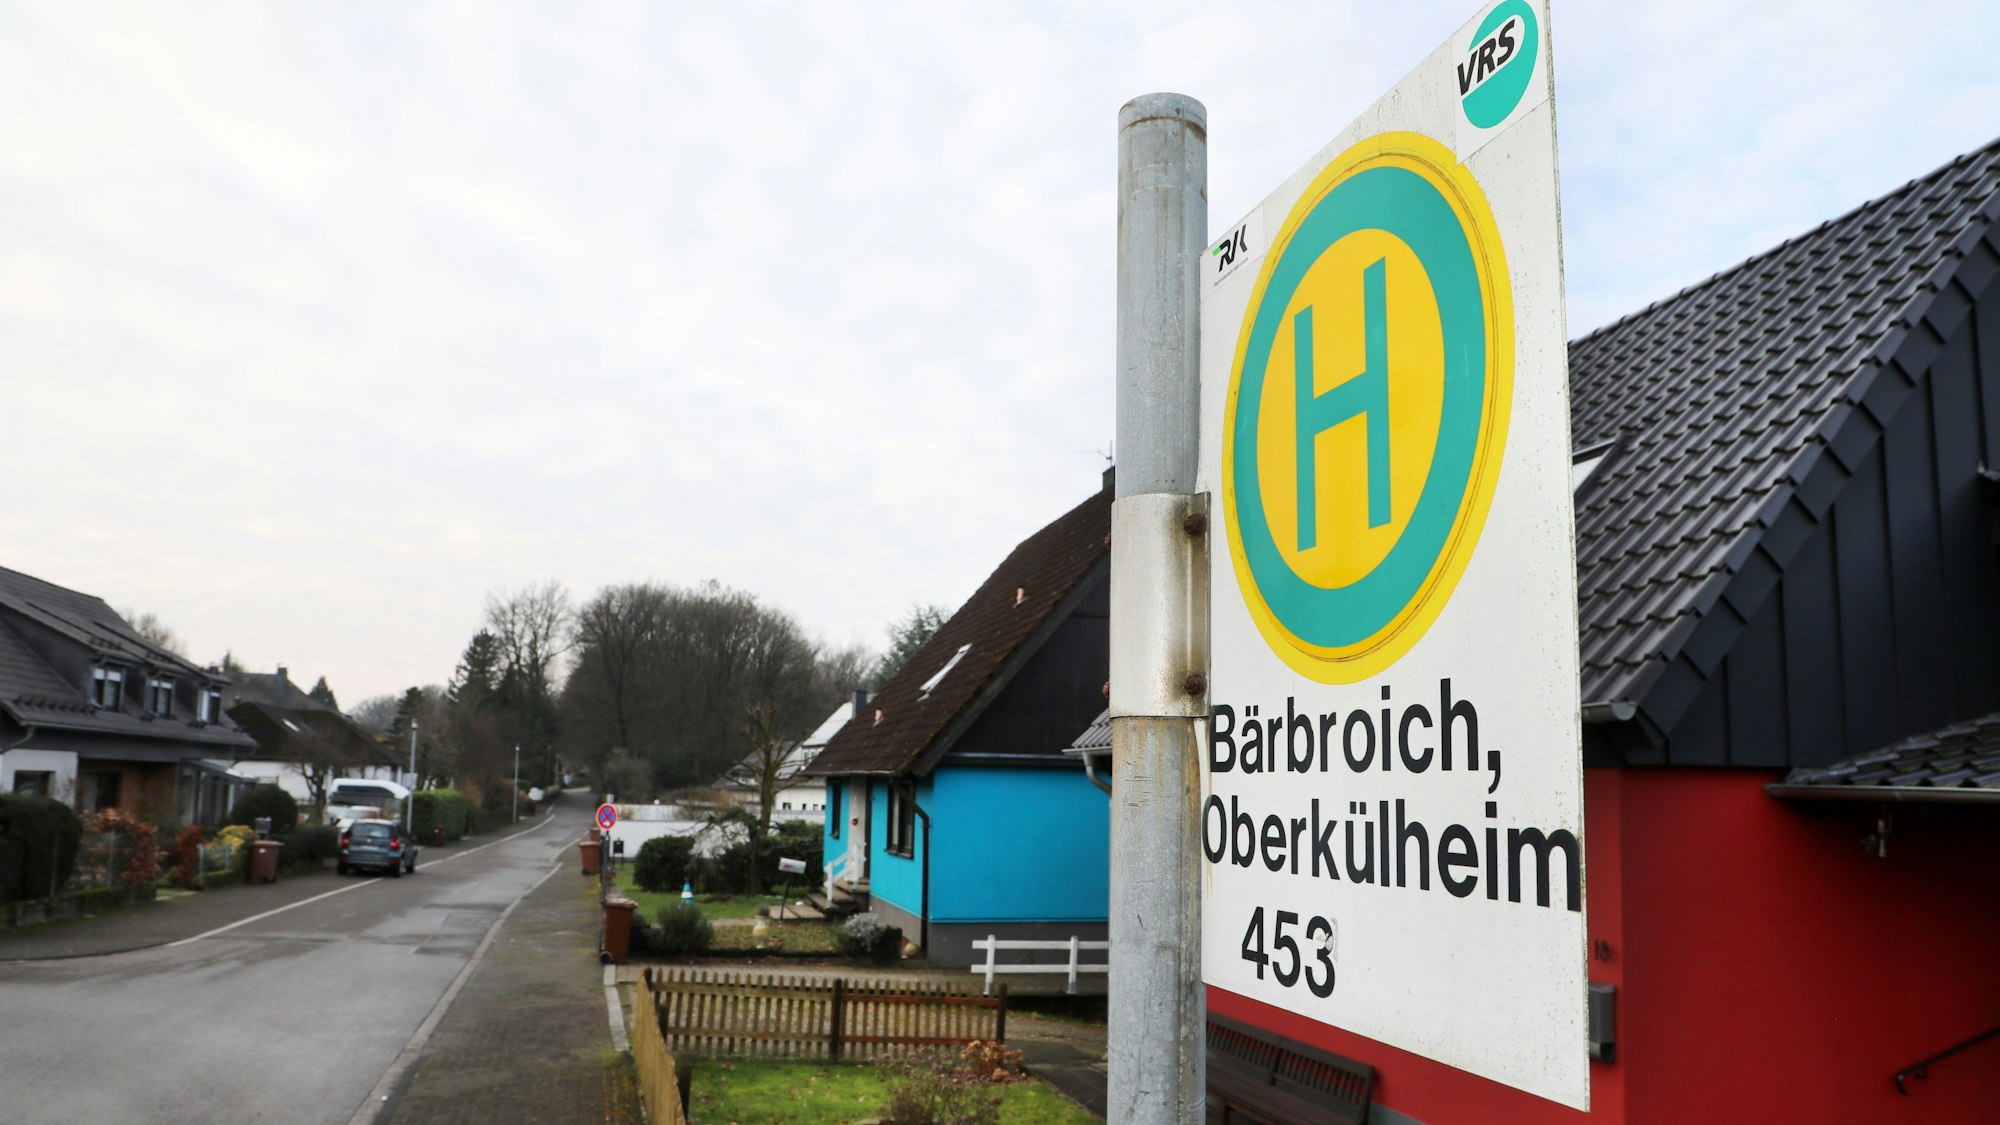 Das Haltstellenschild der Bushaltestelle „Bärbroich, Oberkühlheim“ in Bergisch Gladbach ist zu sehen, im Hintergrund eine Wohnsiedlung mit kleinen Vorgärten.